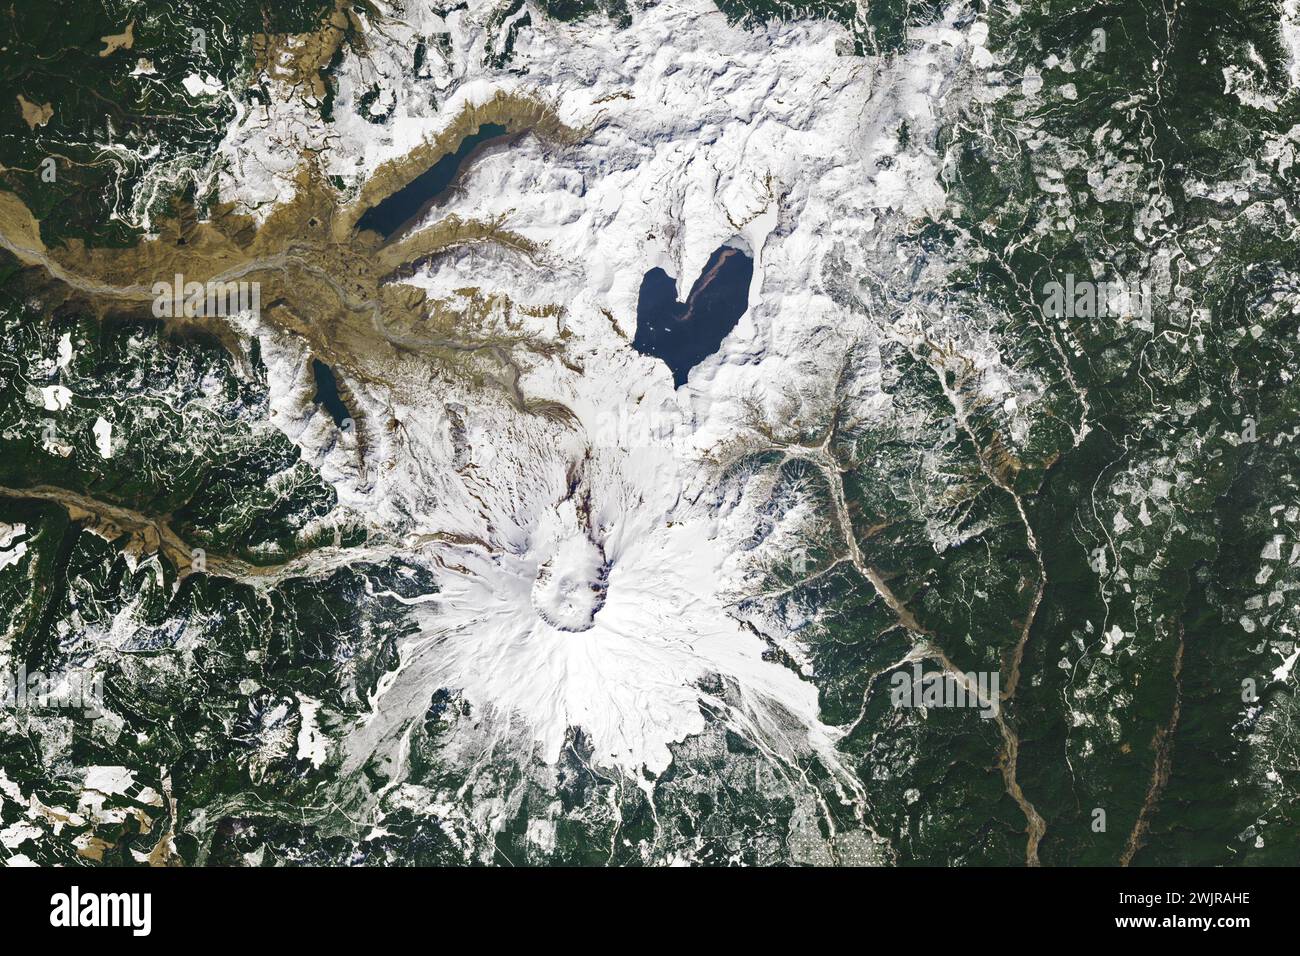 Washington, Stati Uniti. 26 aprile 2023. Spirit Lake è resiliente. Il lago e un tempo popolare sito turistico nel centro-sud di Washington fu quasi cancellato nel maggio 1980 durante gli eventi che si svolsero intorno alla catastrofica eruzione del Monte Sant'Elena. Il lago è sopravvissuto e ha assunto una nuova forma incantevole. Gli oli (Operational Land Imager) su Landsat 8 acquisirono queste immagini il 26 aprile 2023. Una coperta bianca di neve contrasta con l'acqua blu scuro, enfatizzando la forma a cuore del lago se vista dall'alto. Prima dell'eruzione, Spirit Lake aveva un'impronta più piccola che consisteva in ovest e. Foto Stock